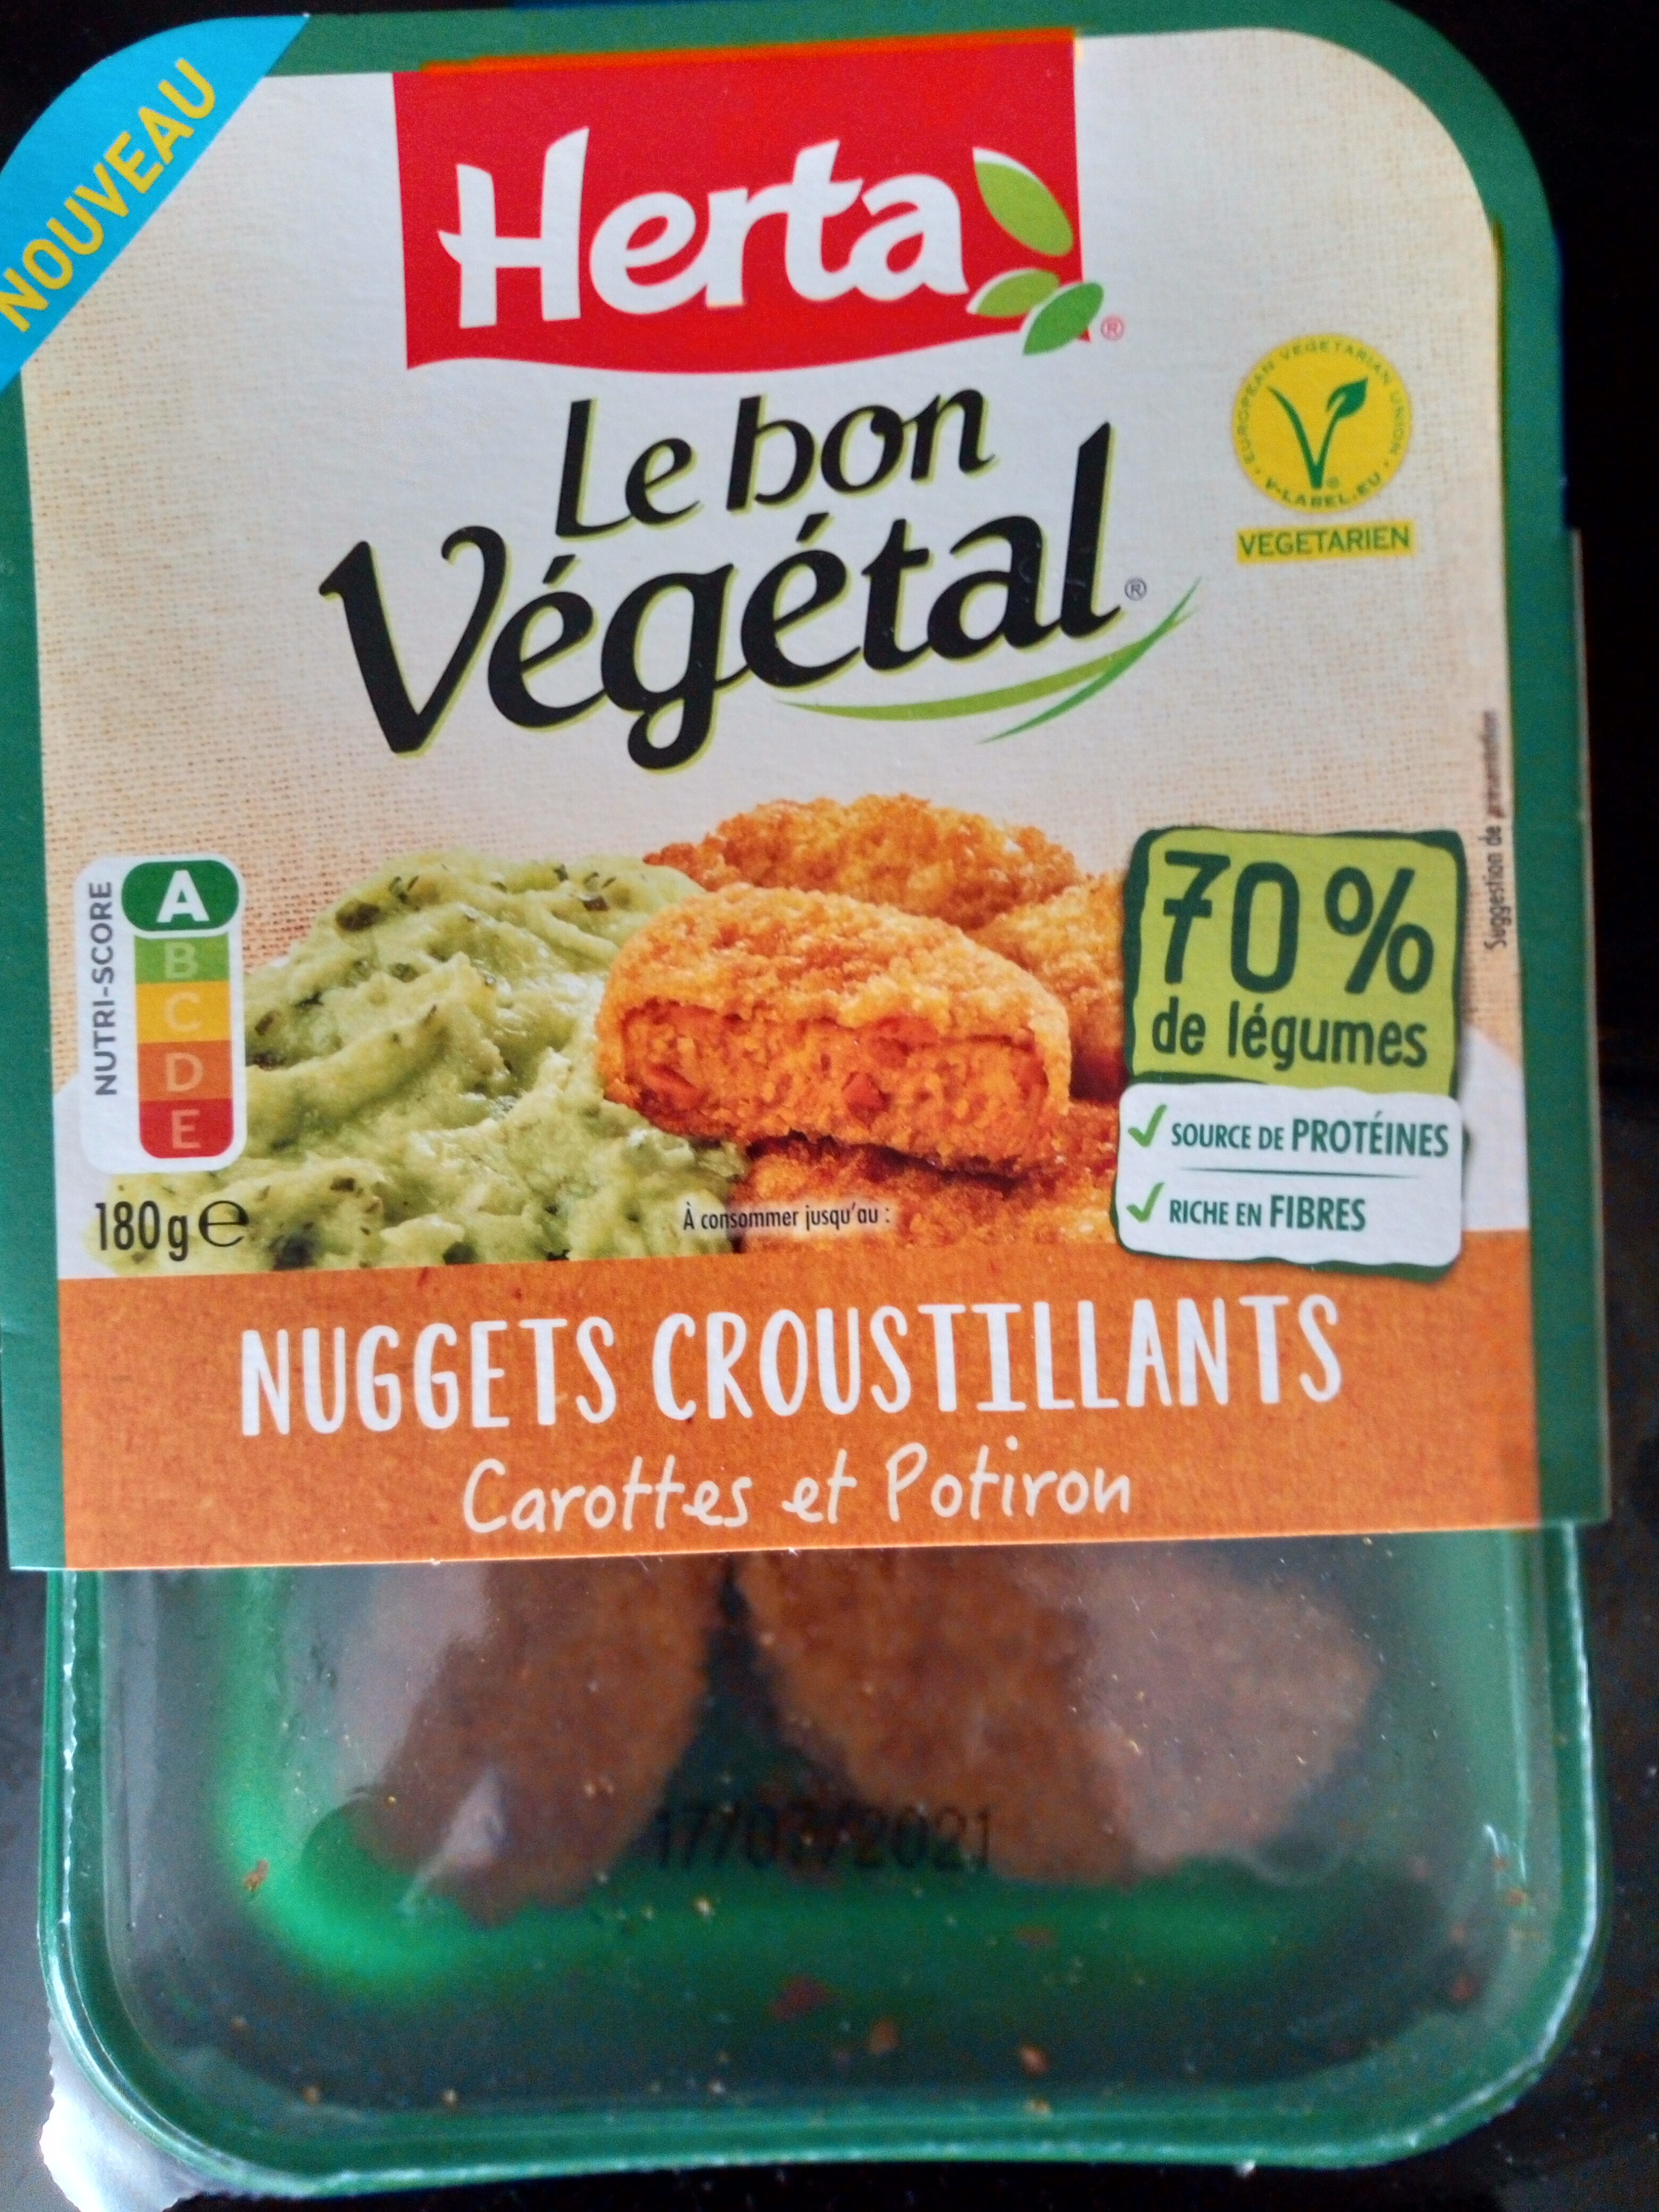 Nuggets croustillants Carottes et Potiron - Product - fr